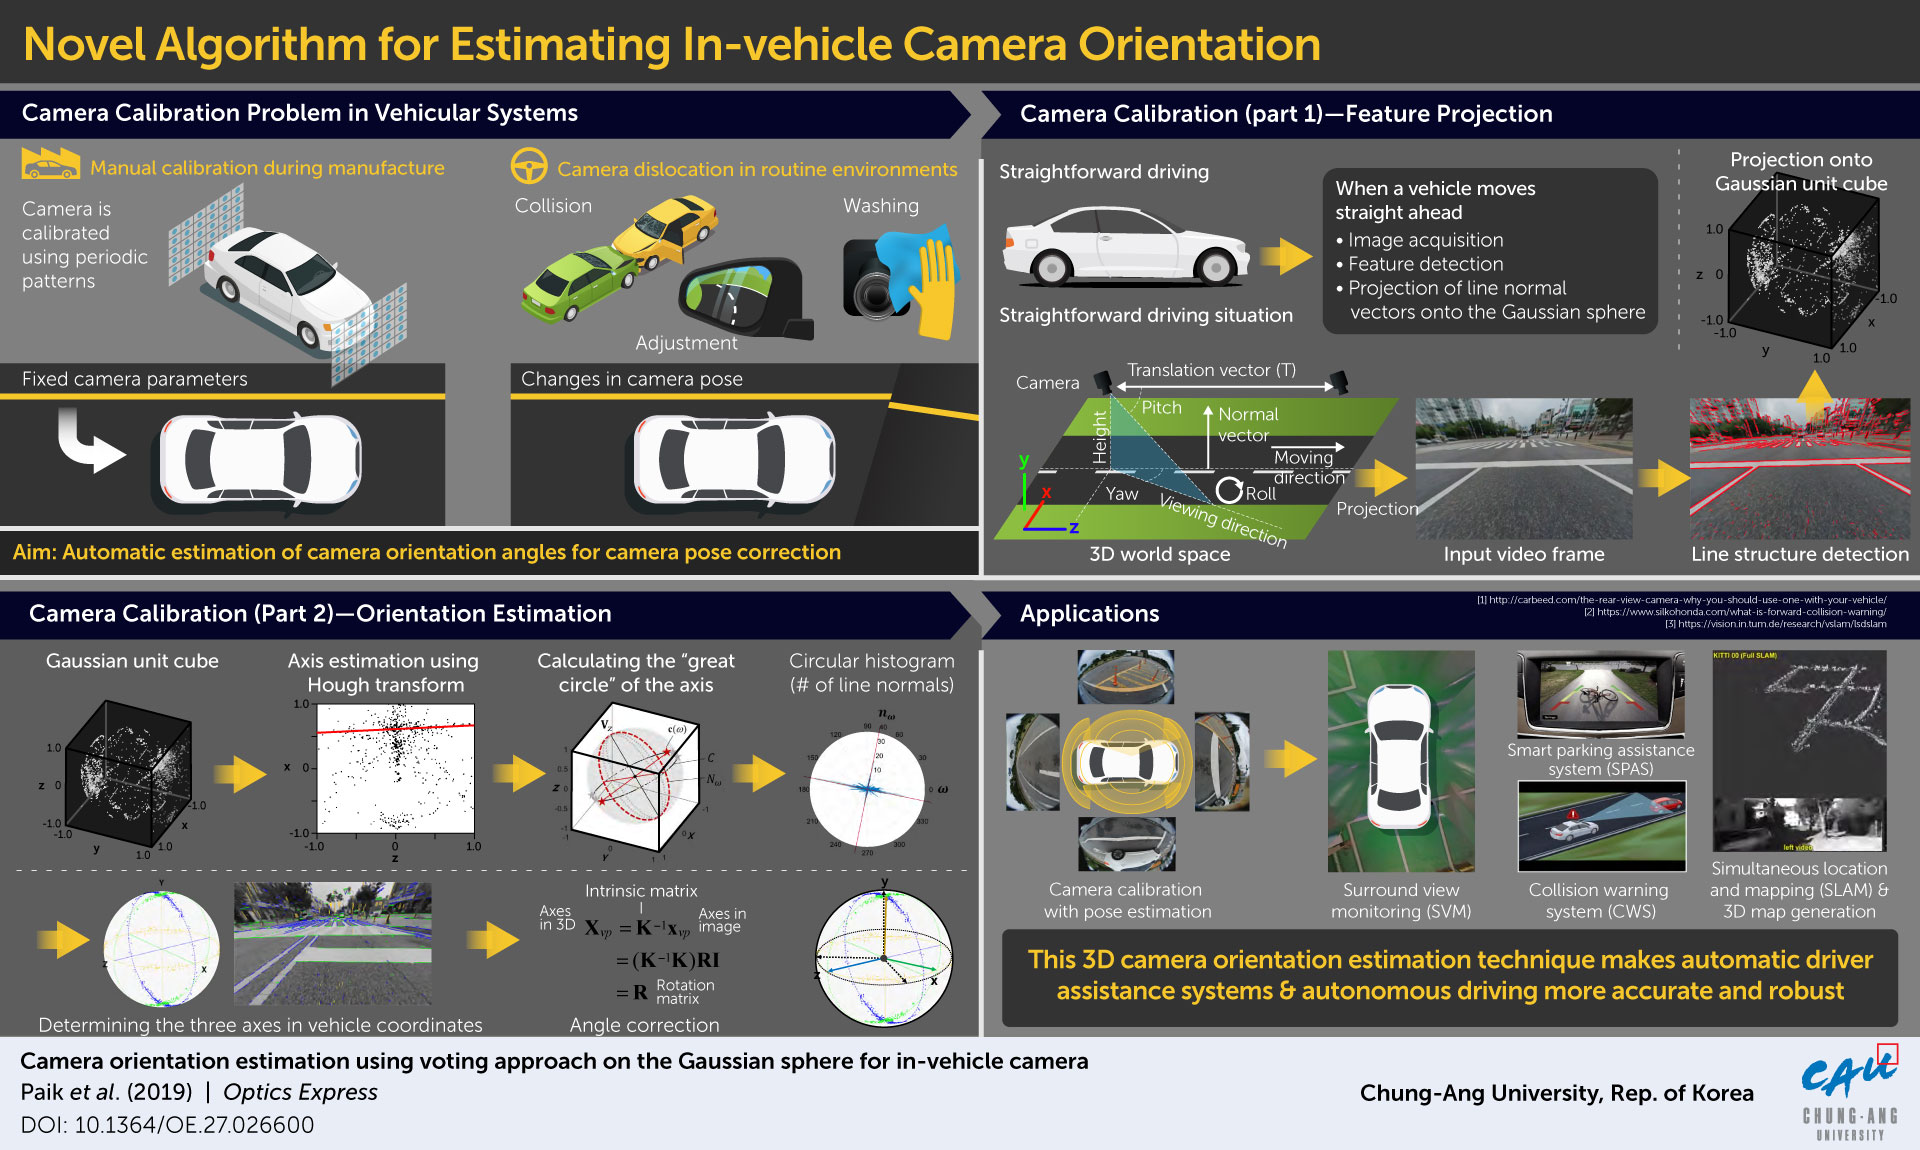 novel-camera-calibration-method-could-drive-safer-autonomous-vehicles